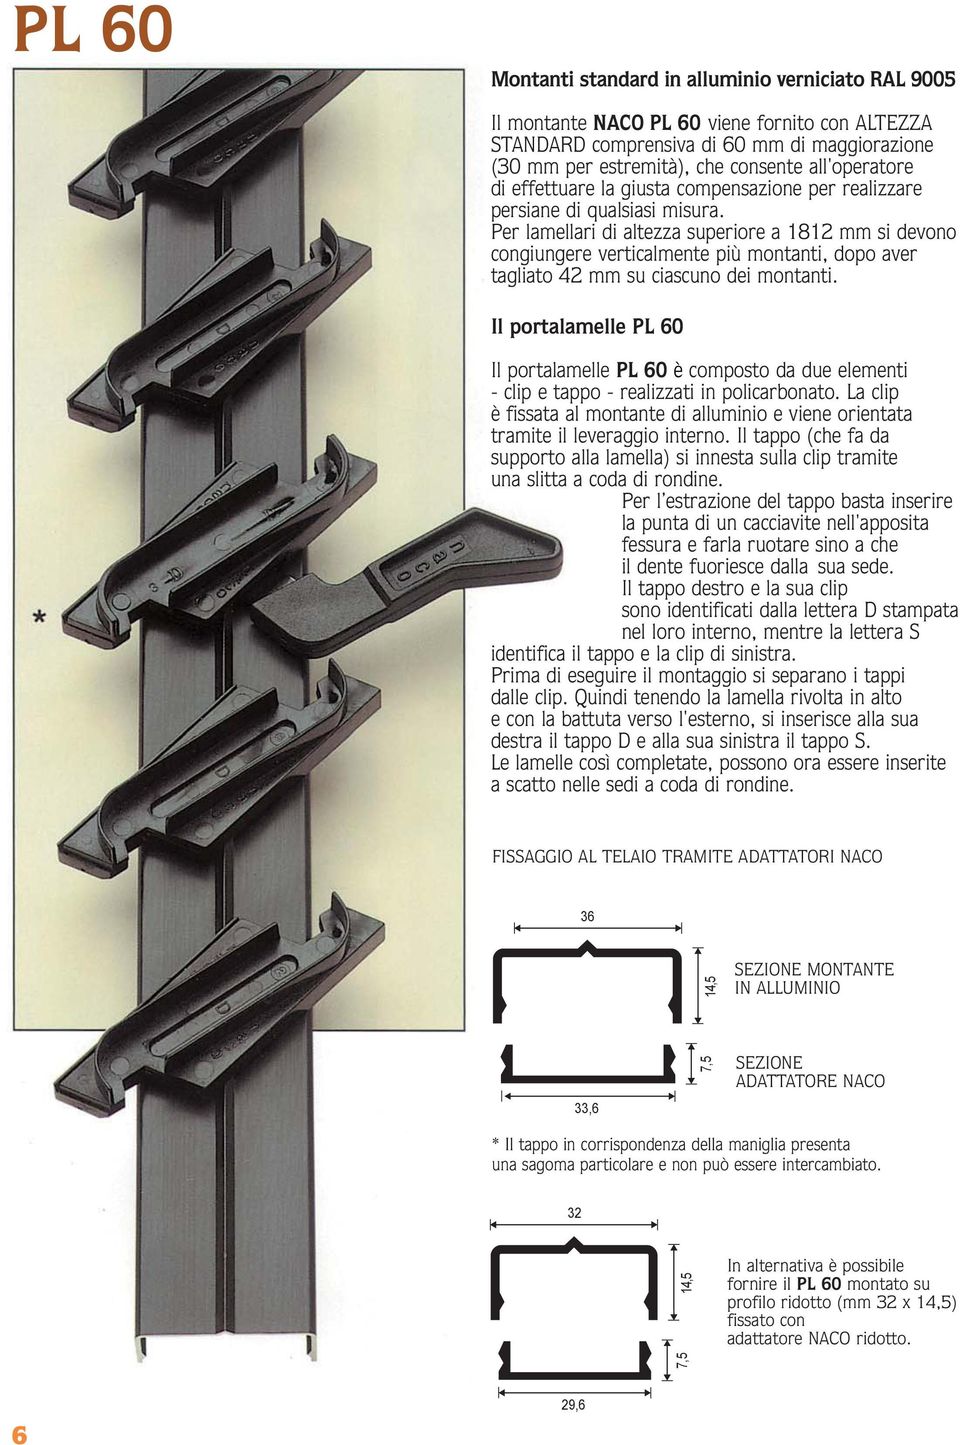 Per lamellari di altezza superiore a 112 mm si devono congiungere verticalmente più montanti, dopo aver tagliato 42 mm su ciascuno dei montanti.